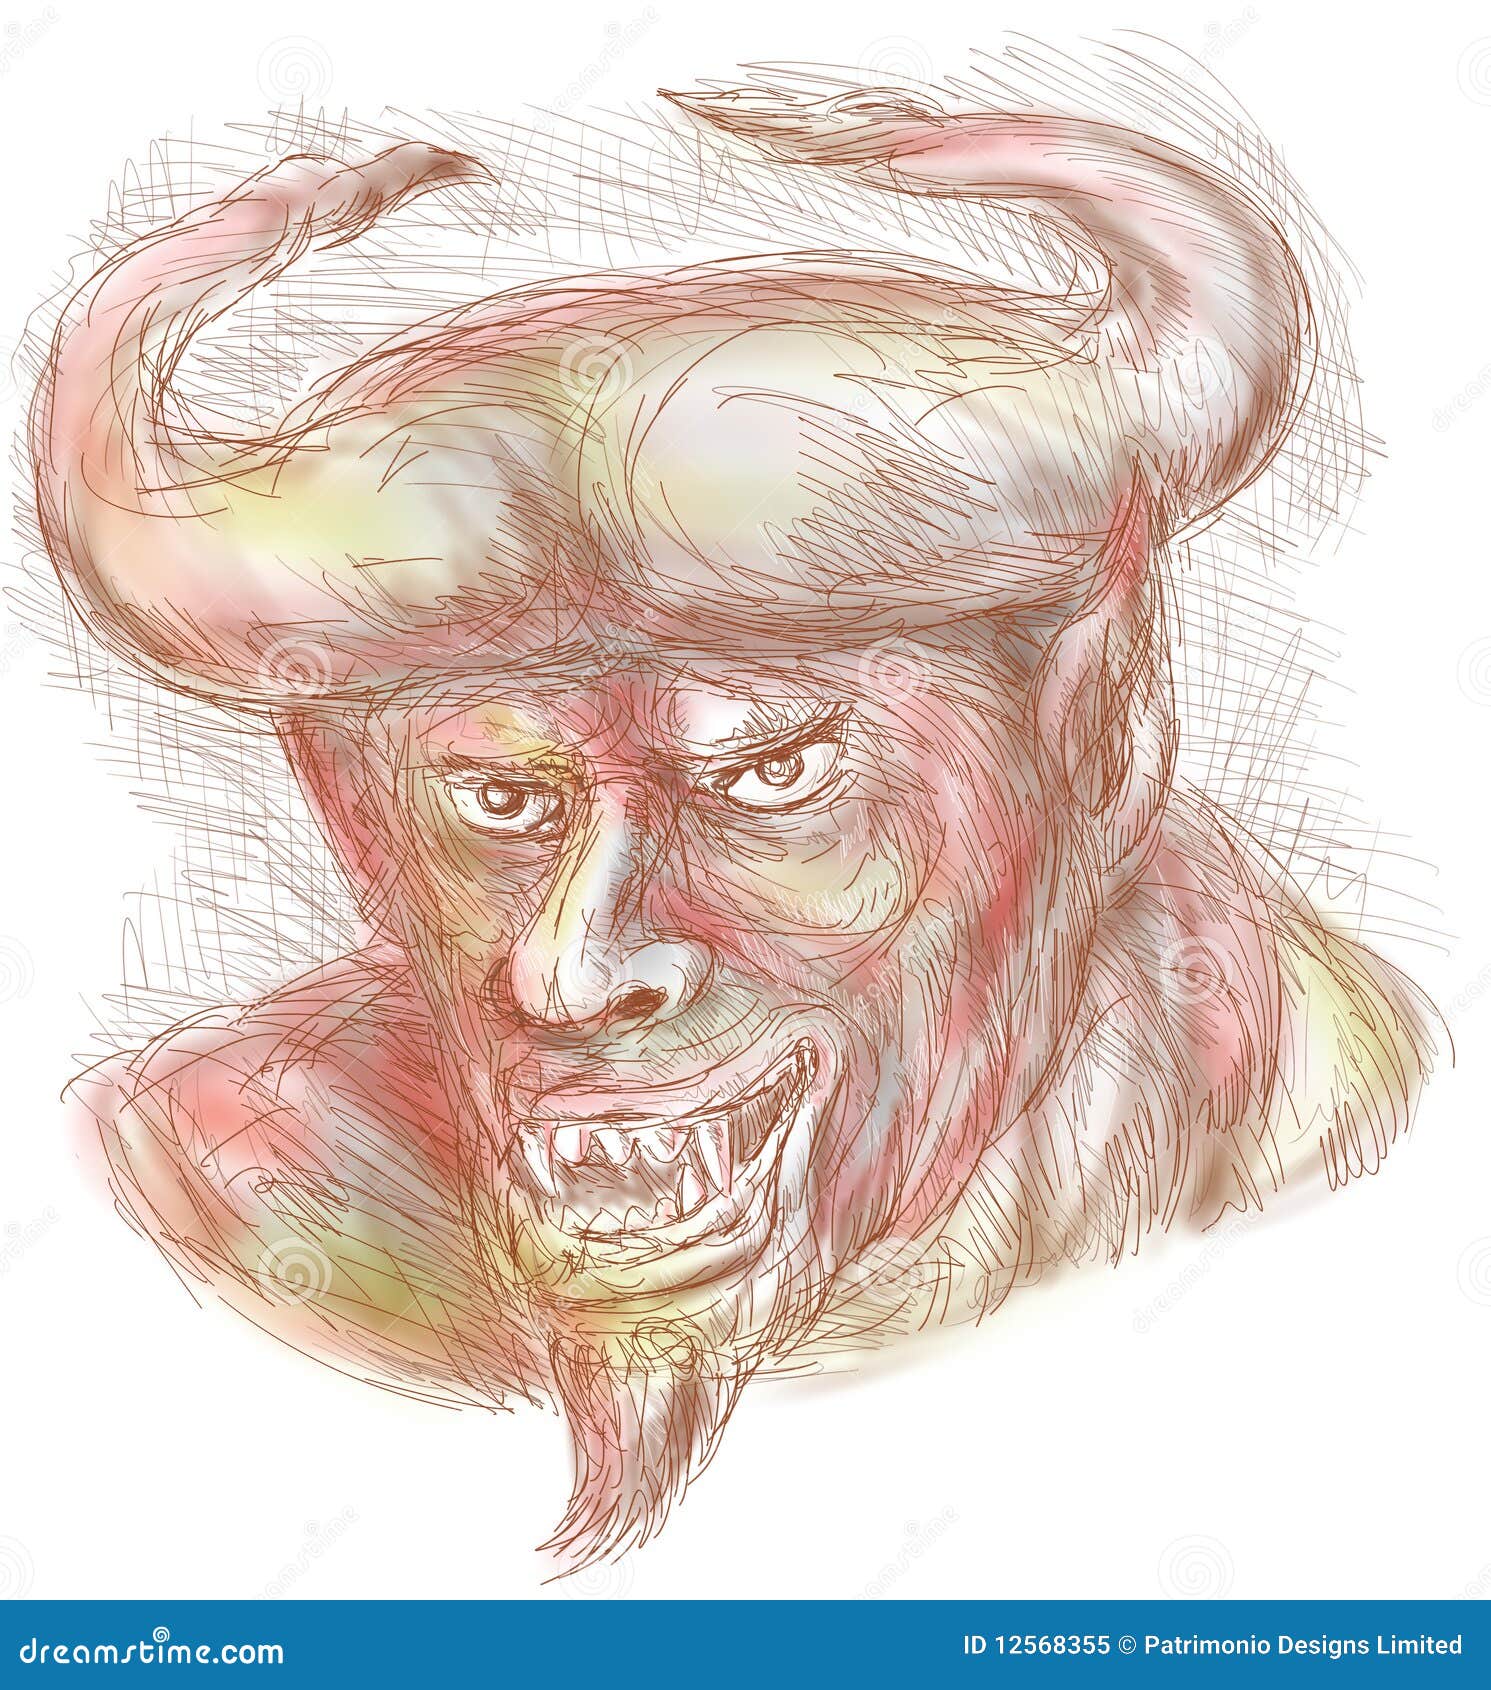 Demon with big horns stock illustration. Illustration of sketch - 12568355